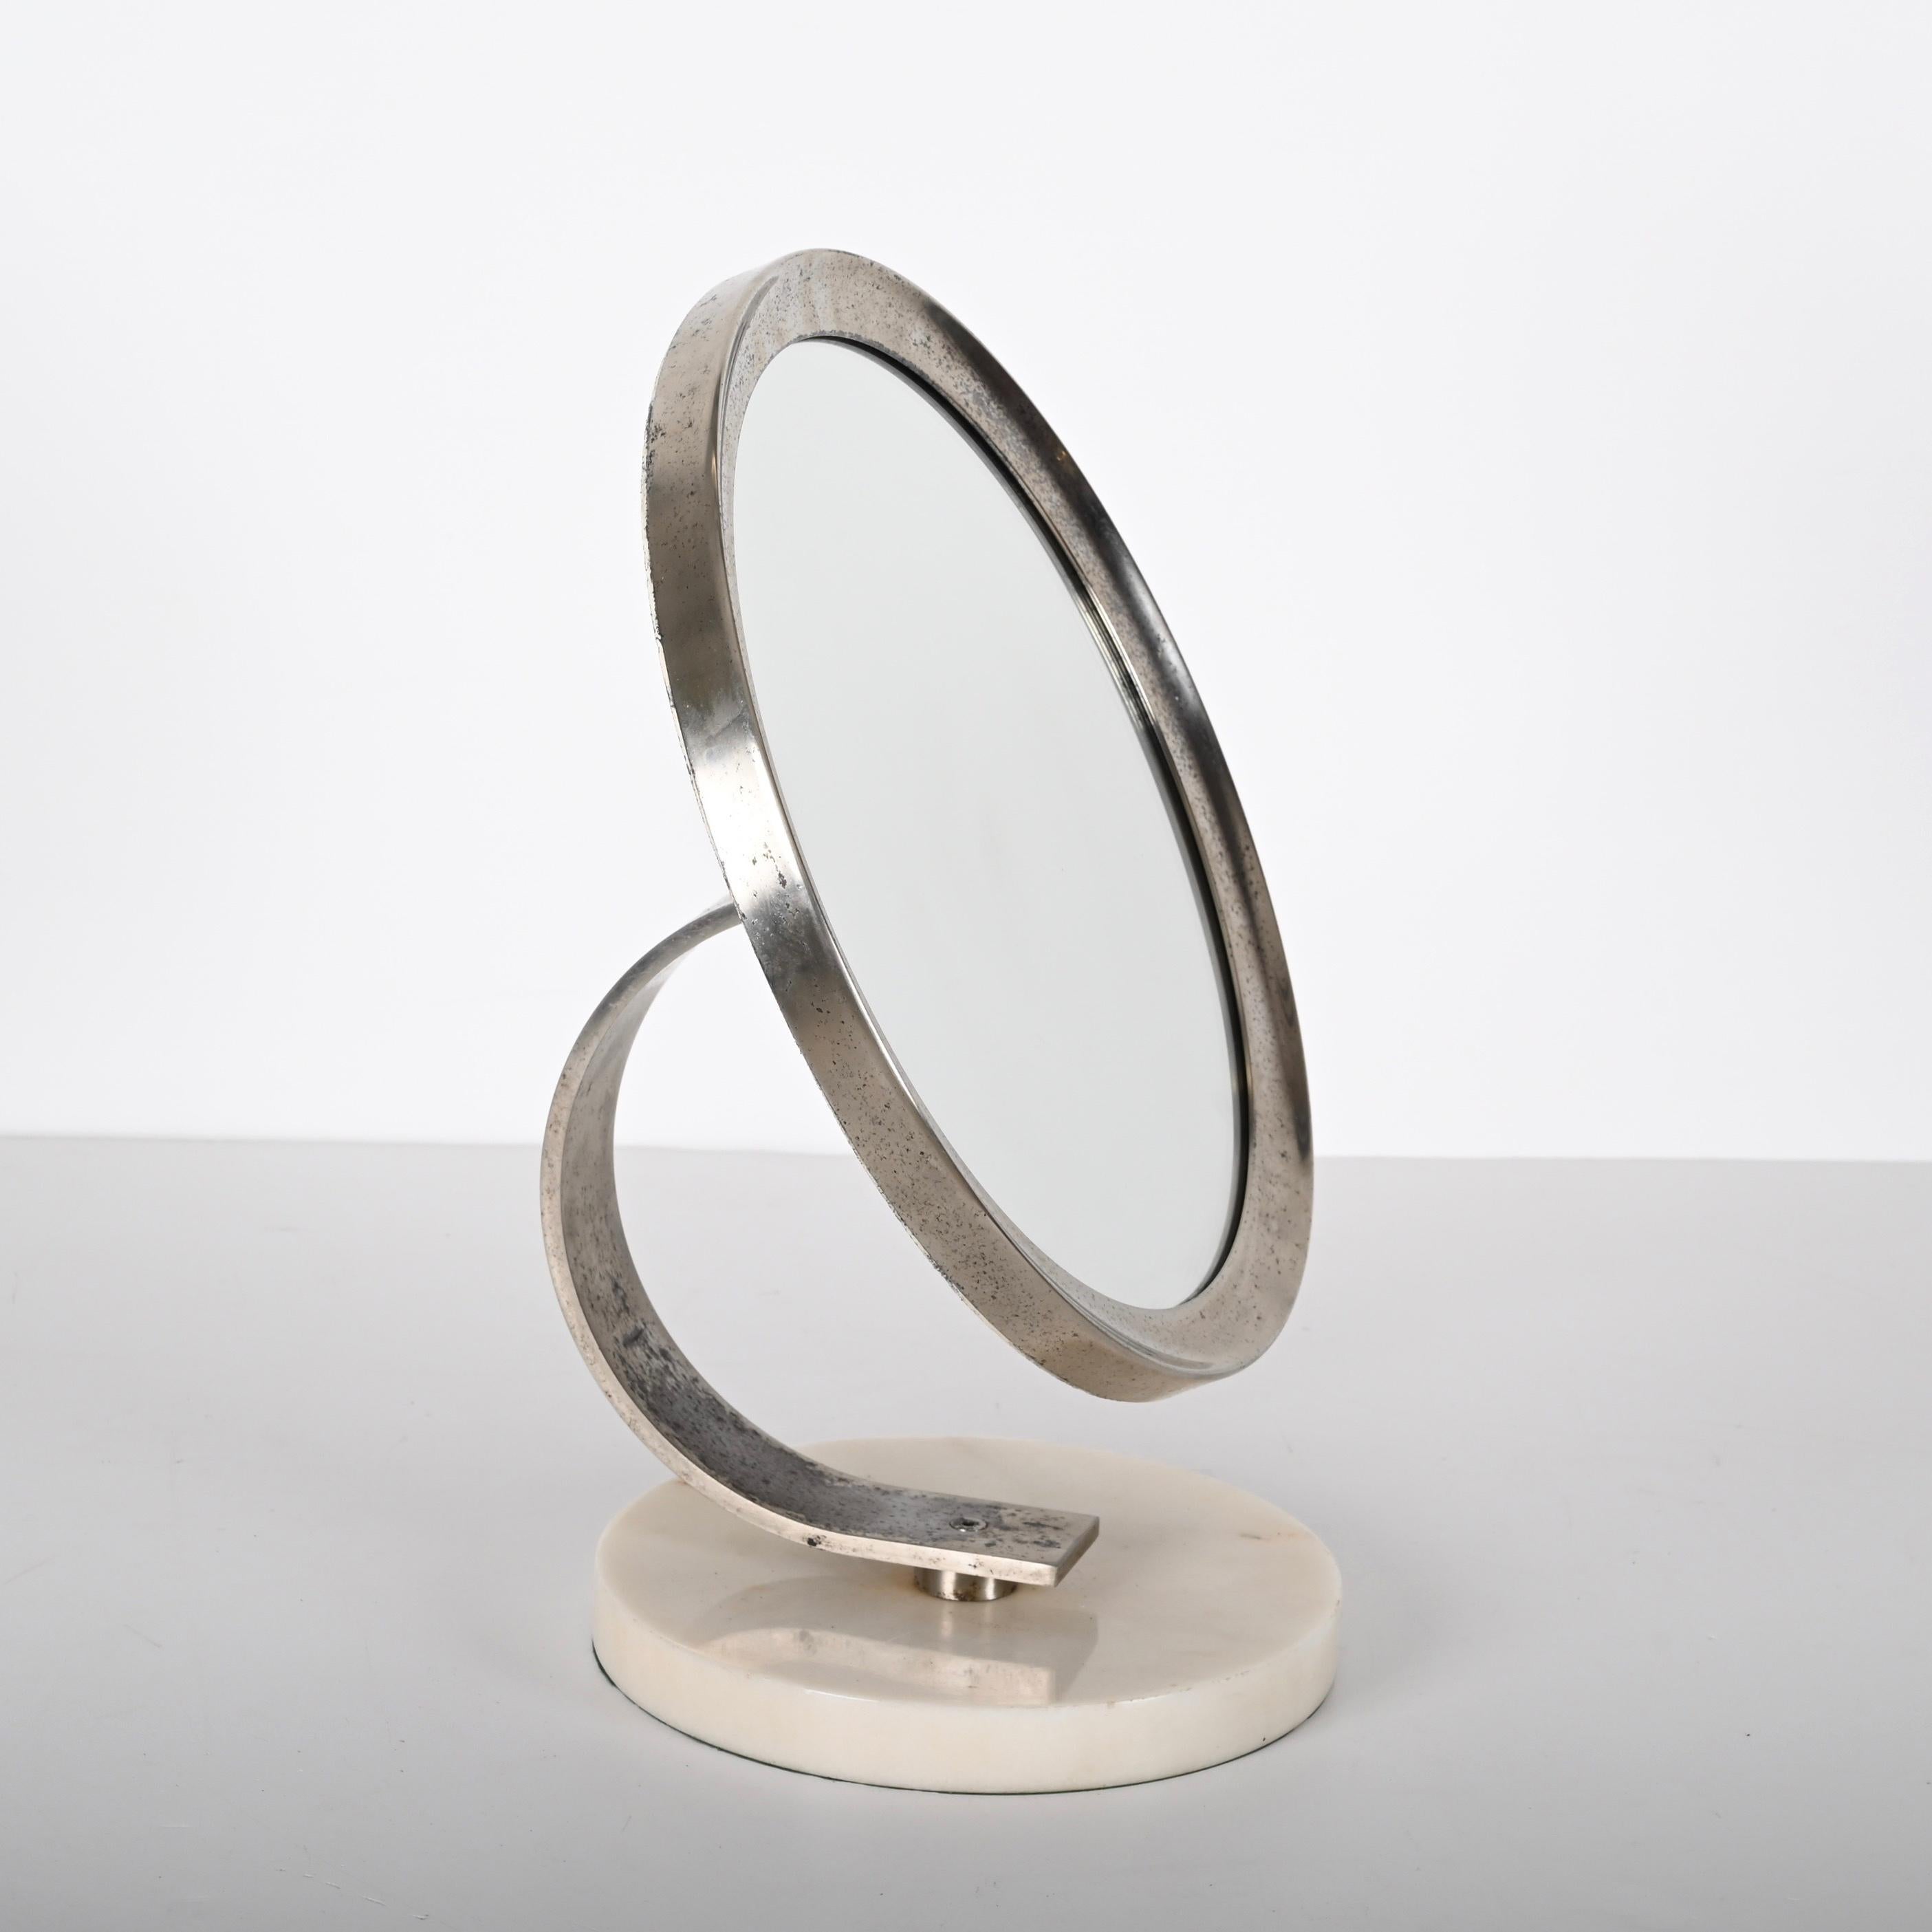 Incroyable miroir de coiffeuse rond en marbre blanc de Carrare et acier du milieu du siècle. Cet article fantastique a été conçu en Italie dans les années 1960.

Il s'agit d'un beau miroir de coiffeuse avec une base circulaire en marbre blanc